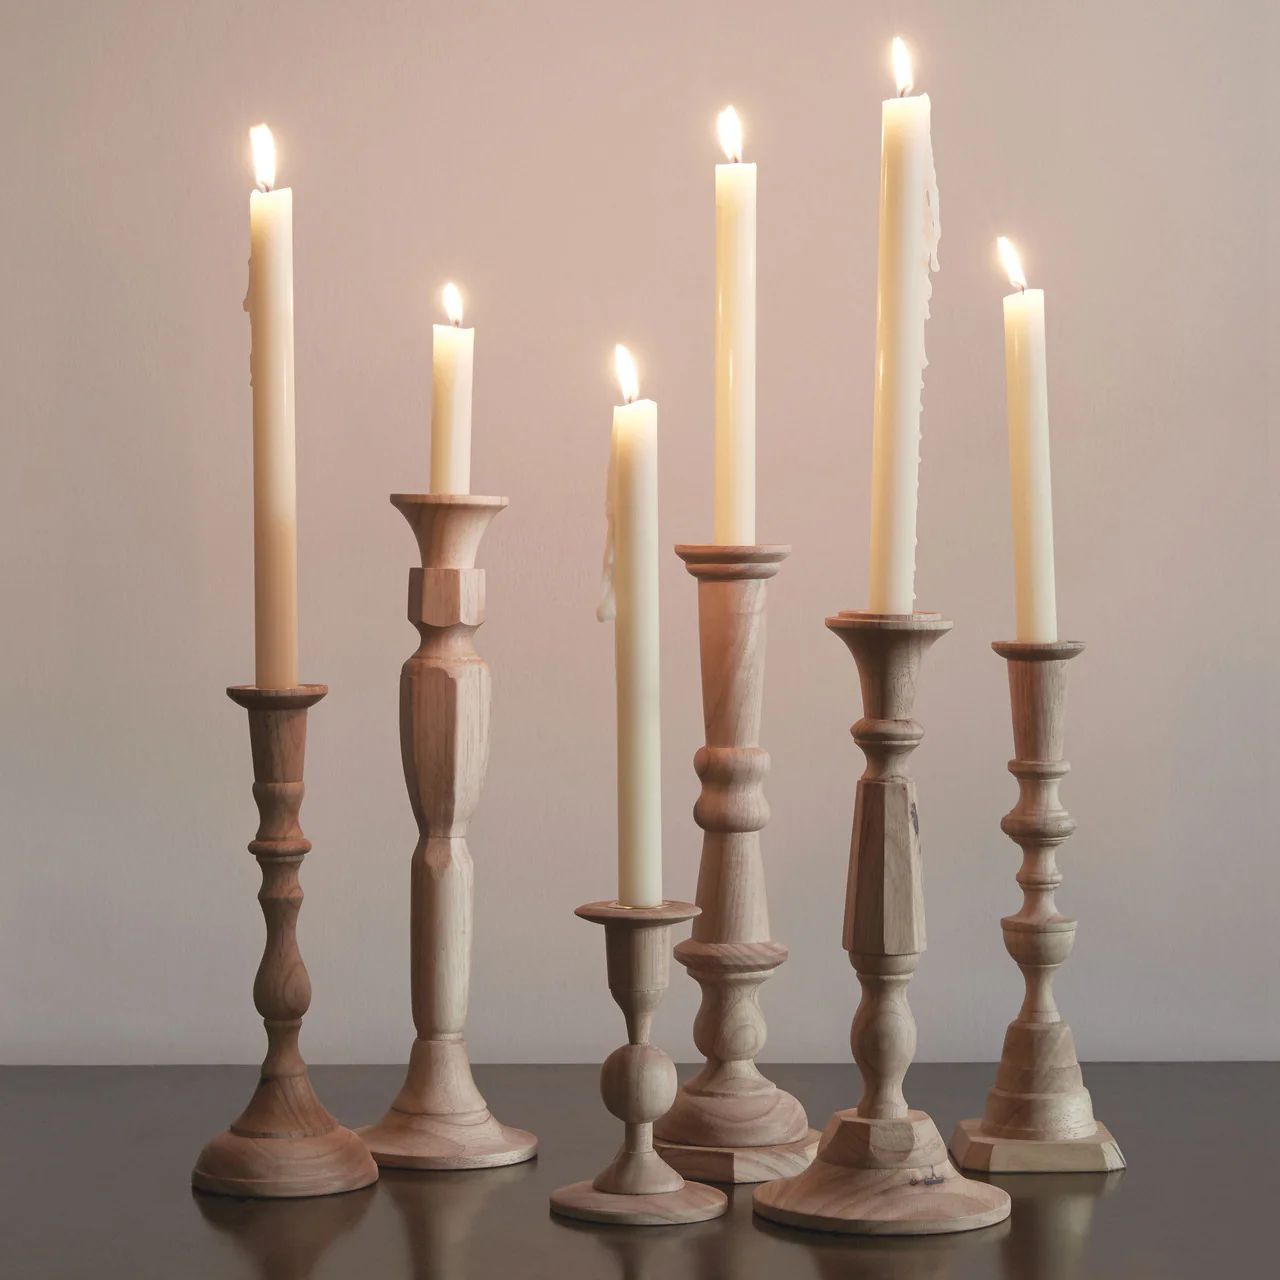 Georgian Candlesticks in Plantation Hardwood | Burke Decor